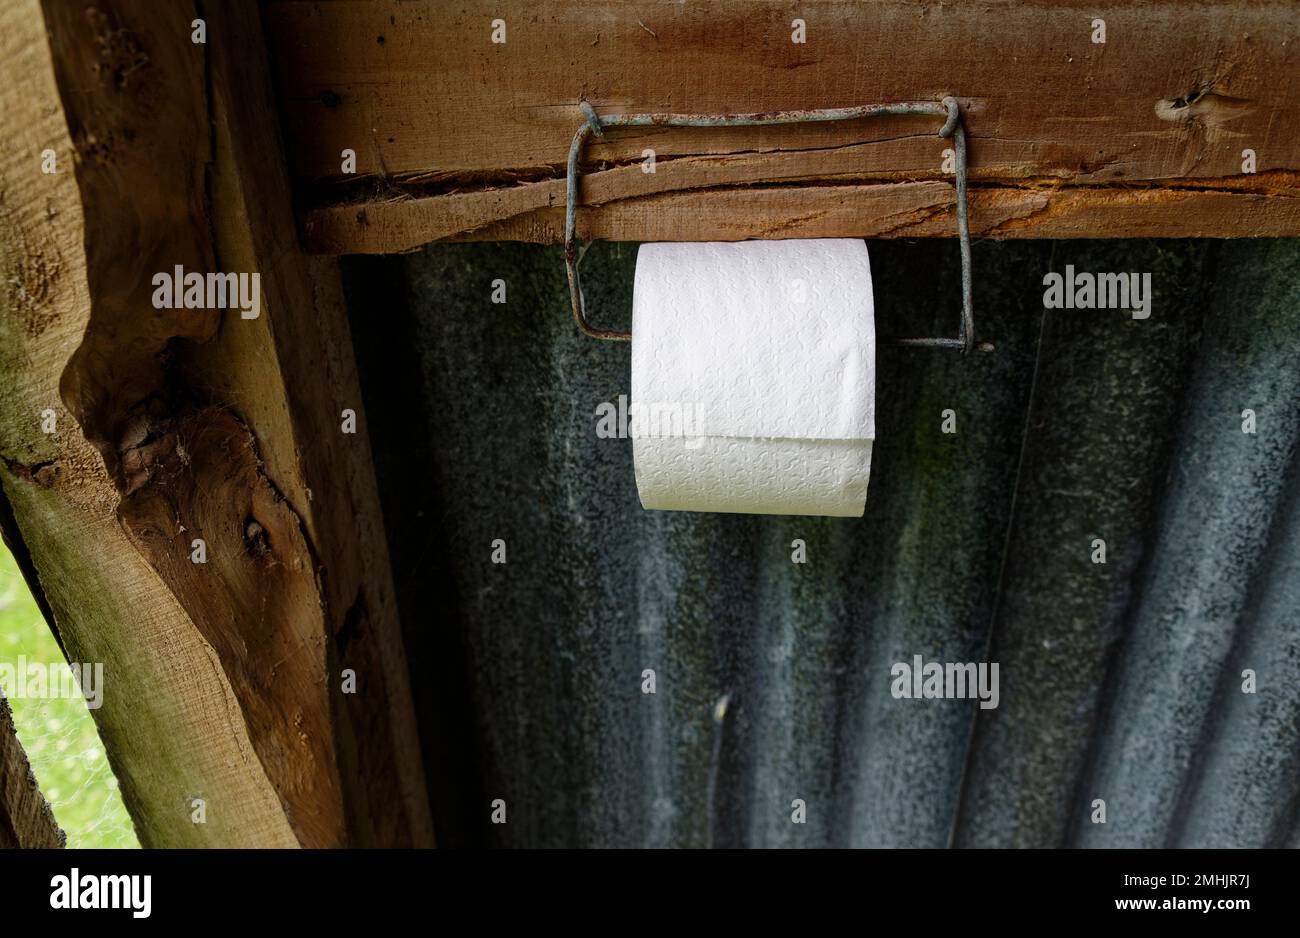 Ein Toilettenrollenhalter besteht aus Zaundraht Nummer 8. Da ist eine Rolle weißes Toilettenpapier drauf. Stockfoto